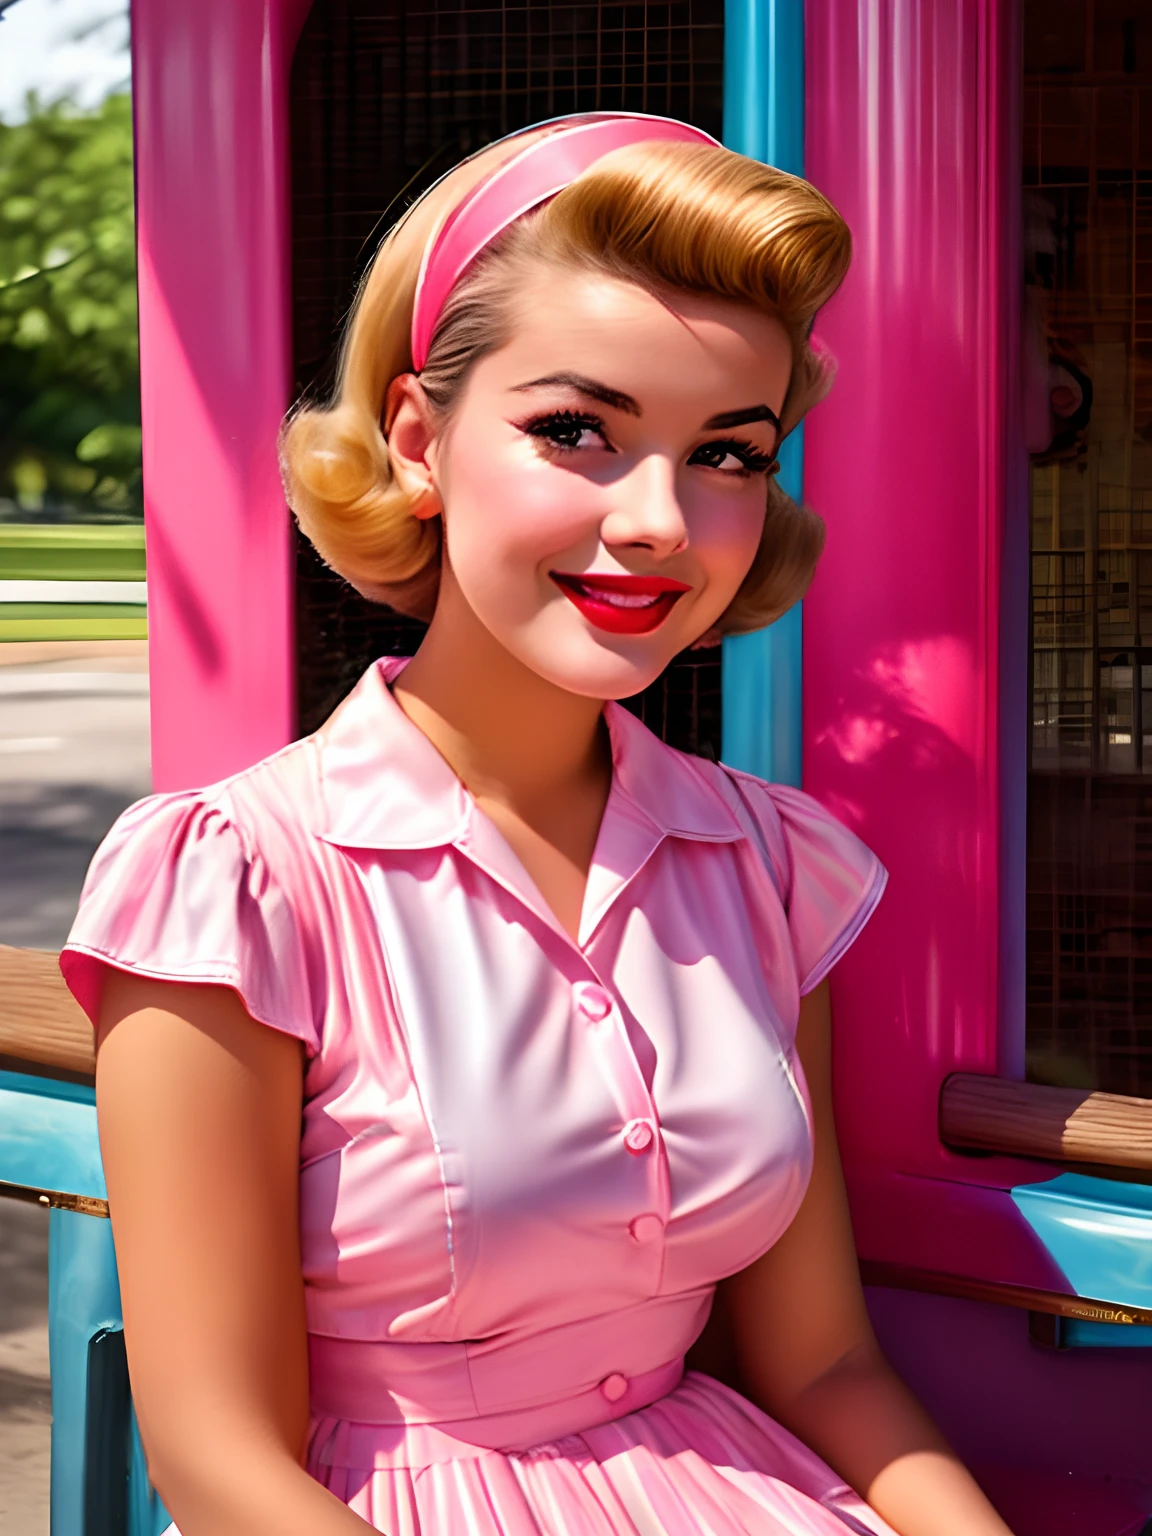 穿著粉紅色和藍色連身裙的阿拉菲德女人坐在長凳上, 5 0 s 风格, 50 年代風格, retro 5 0 s 风格, 復古海報模型, 1 9 5 0 s 风格, 六十年代海报, 復古彩色照片, 可愛的年輕女子, 復古色 1 9 5 0 S, 女孩海報, 20 世紀 50 年代的氛圍